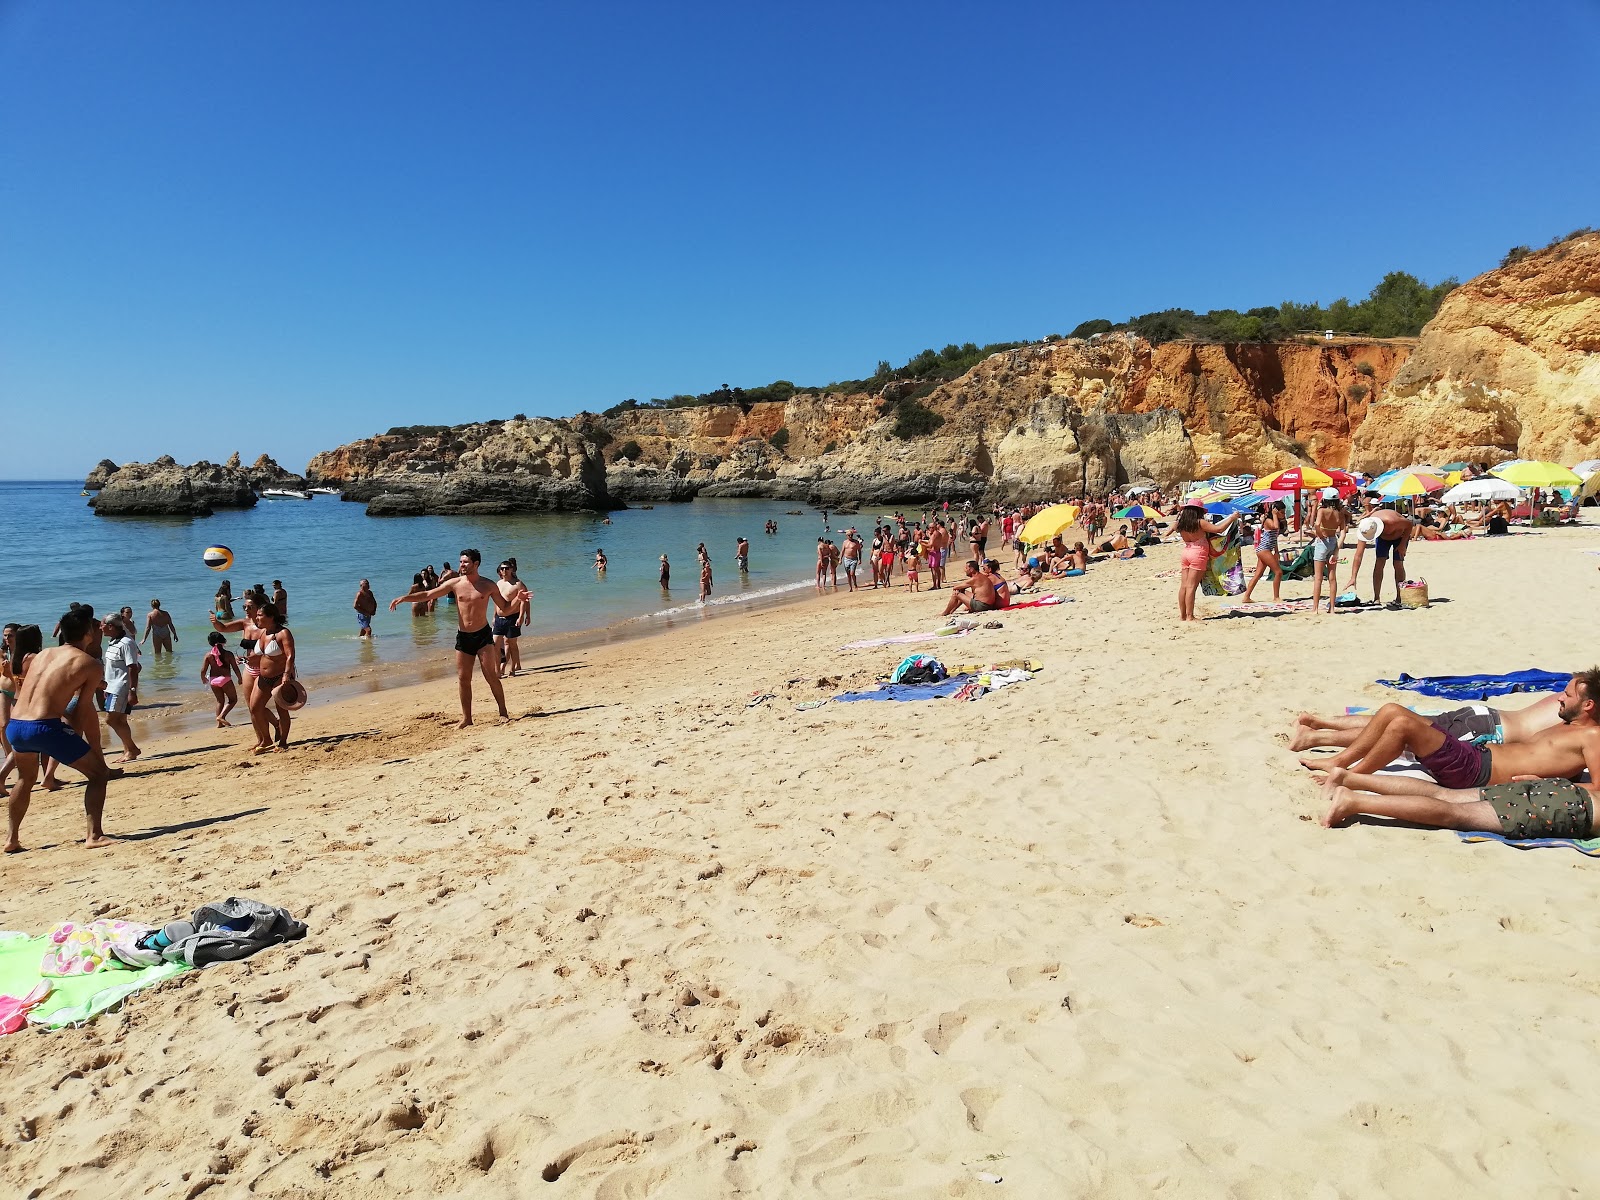 Foto af Praia do Alemao - populært sted blandt afslapningskendere